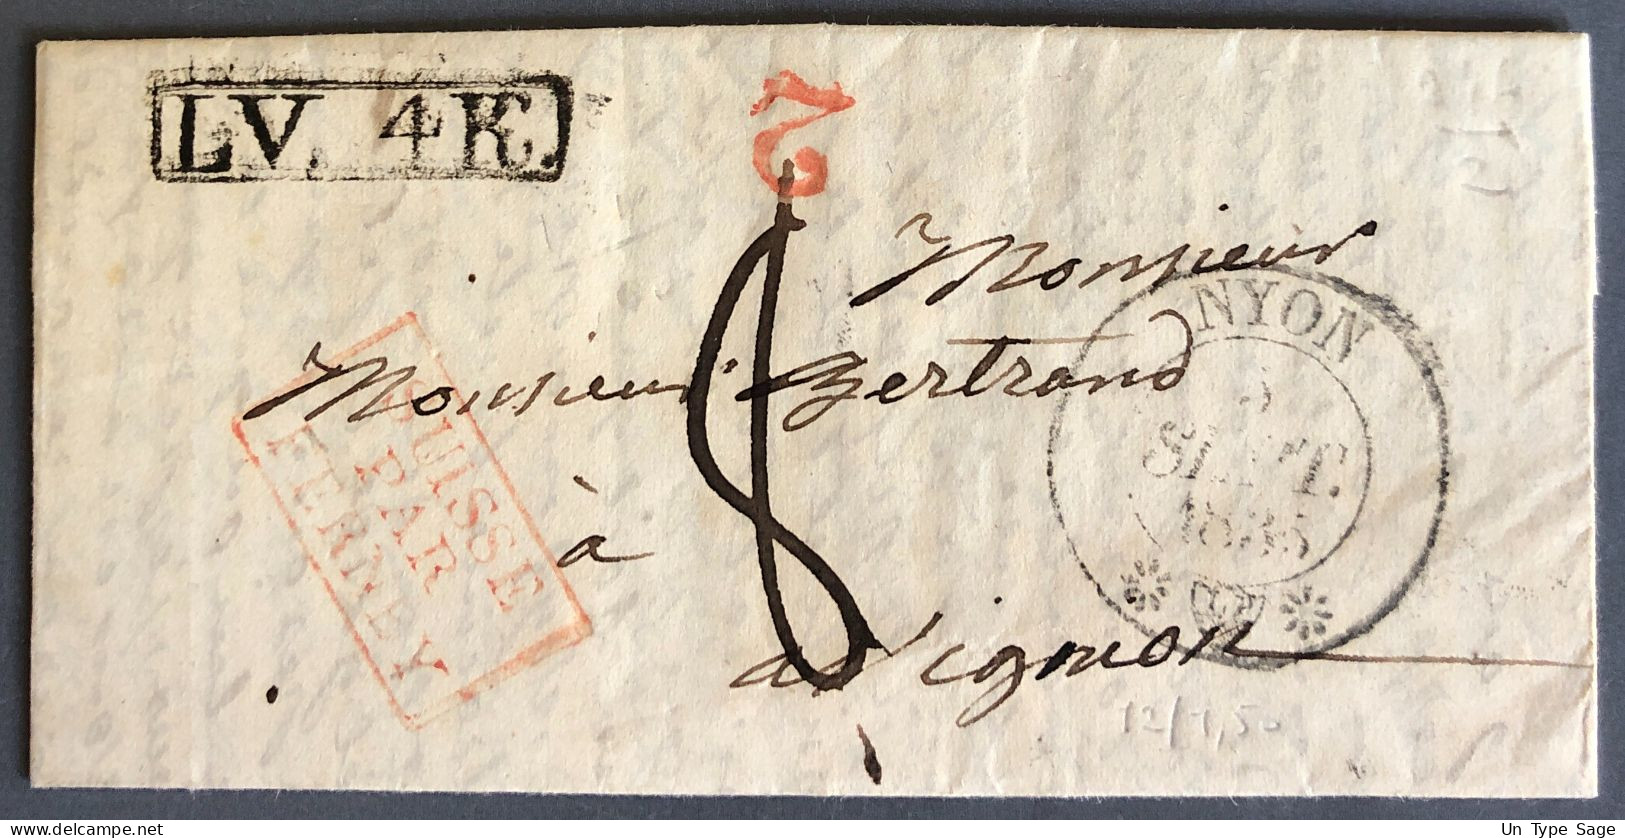 Suisse, Griffe D'entrée SUISSE PAR FERNEY - 3.9.1835 Sur Lettre - (W1154) - Poststempel